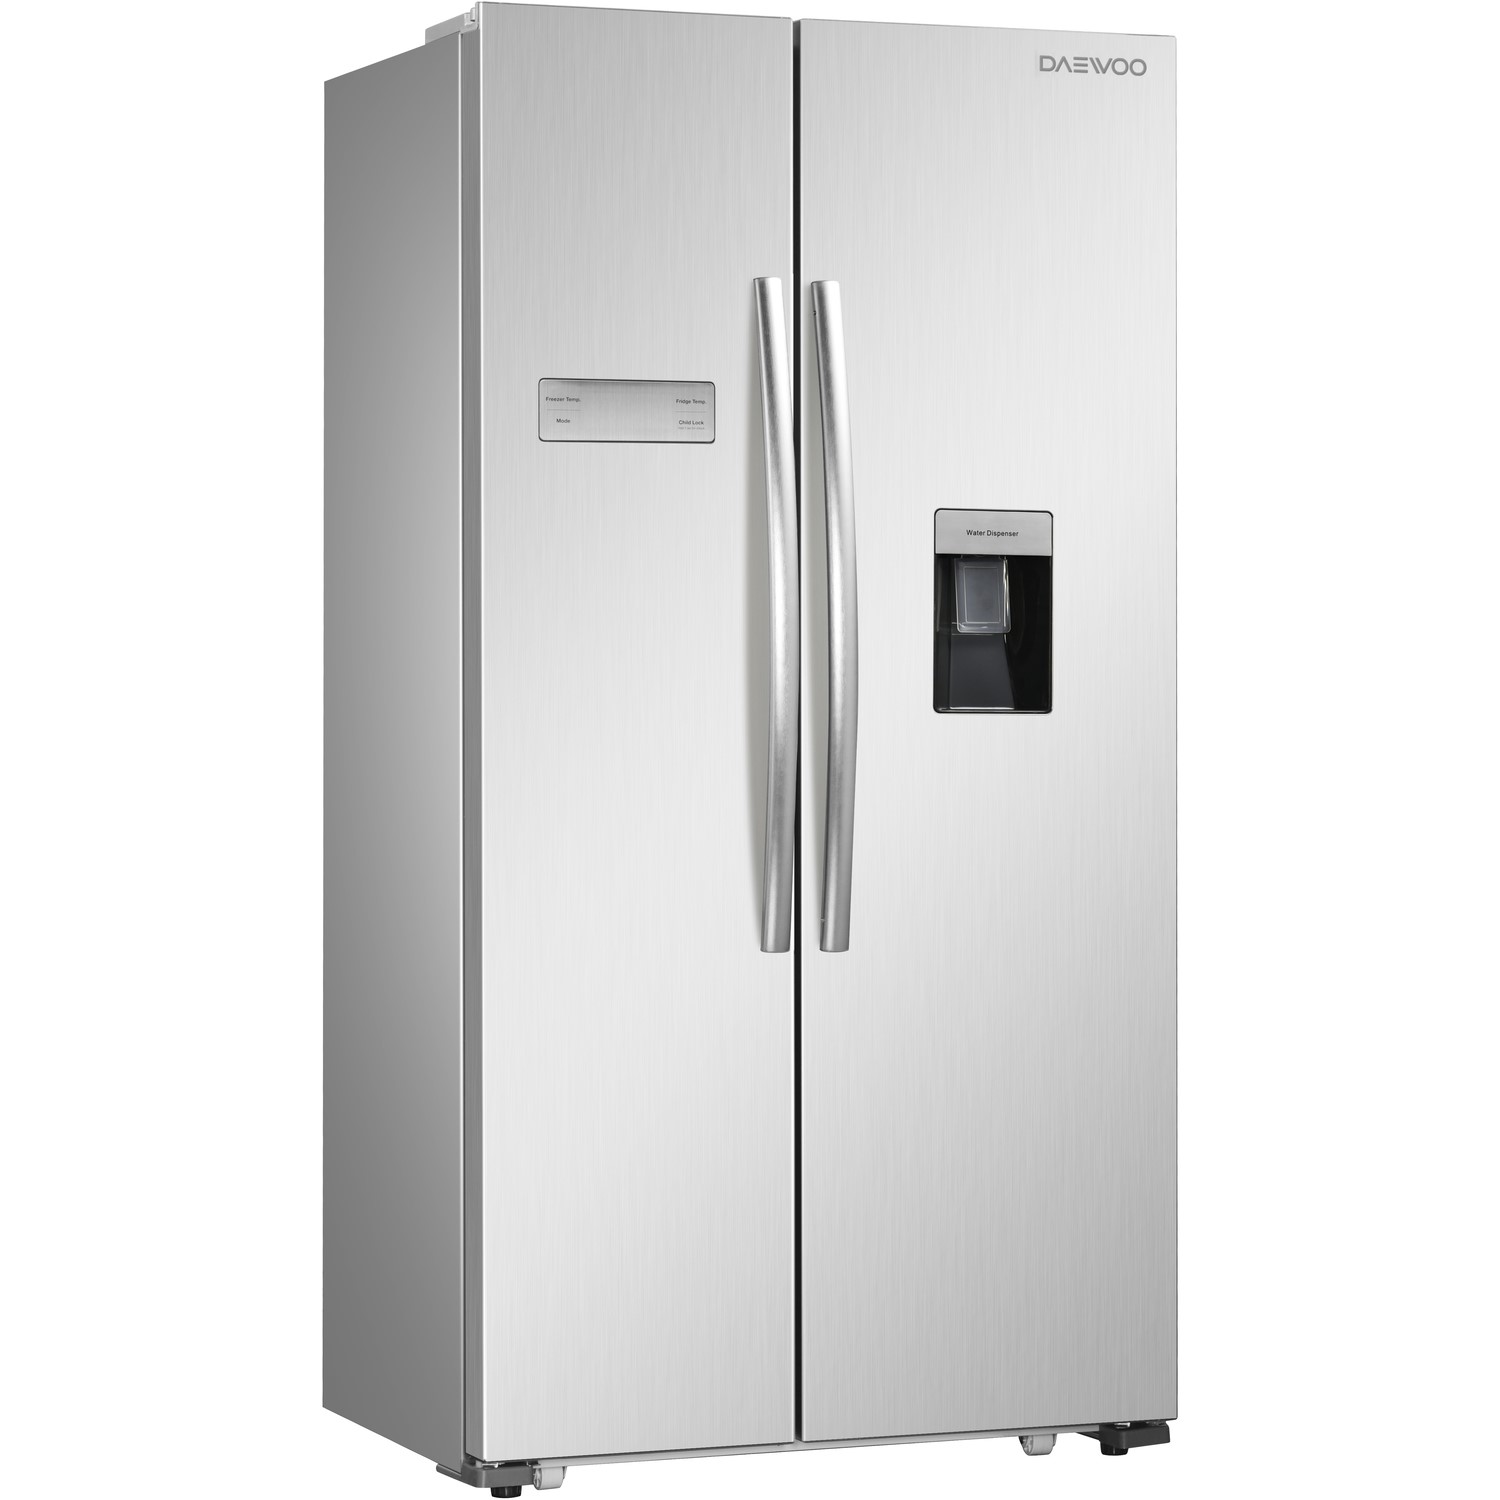 23+ Daewoo fridge freezer uk information